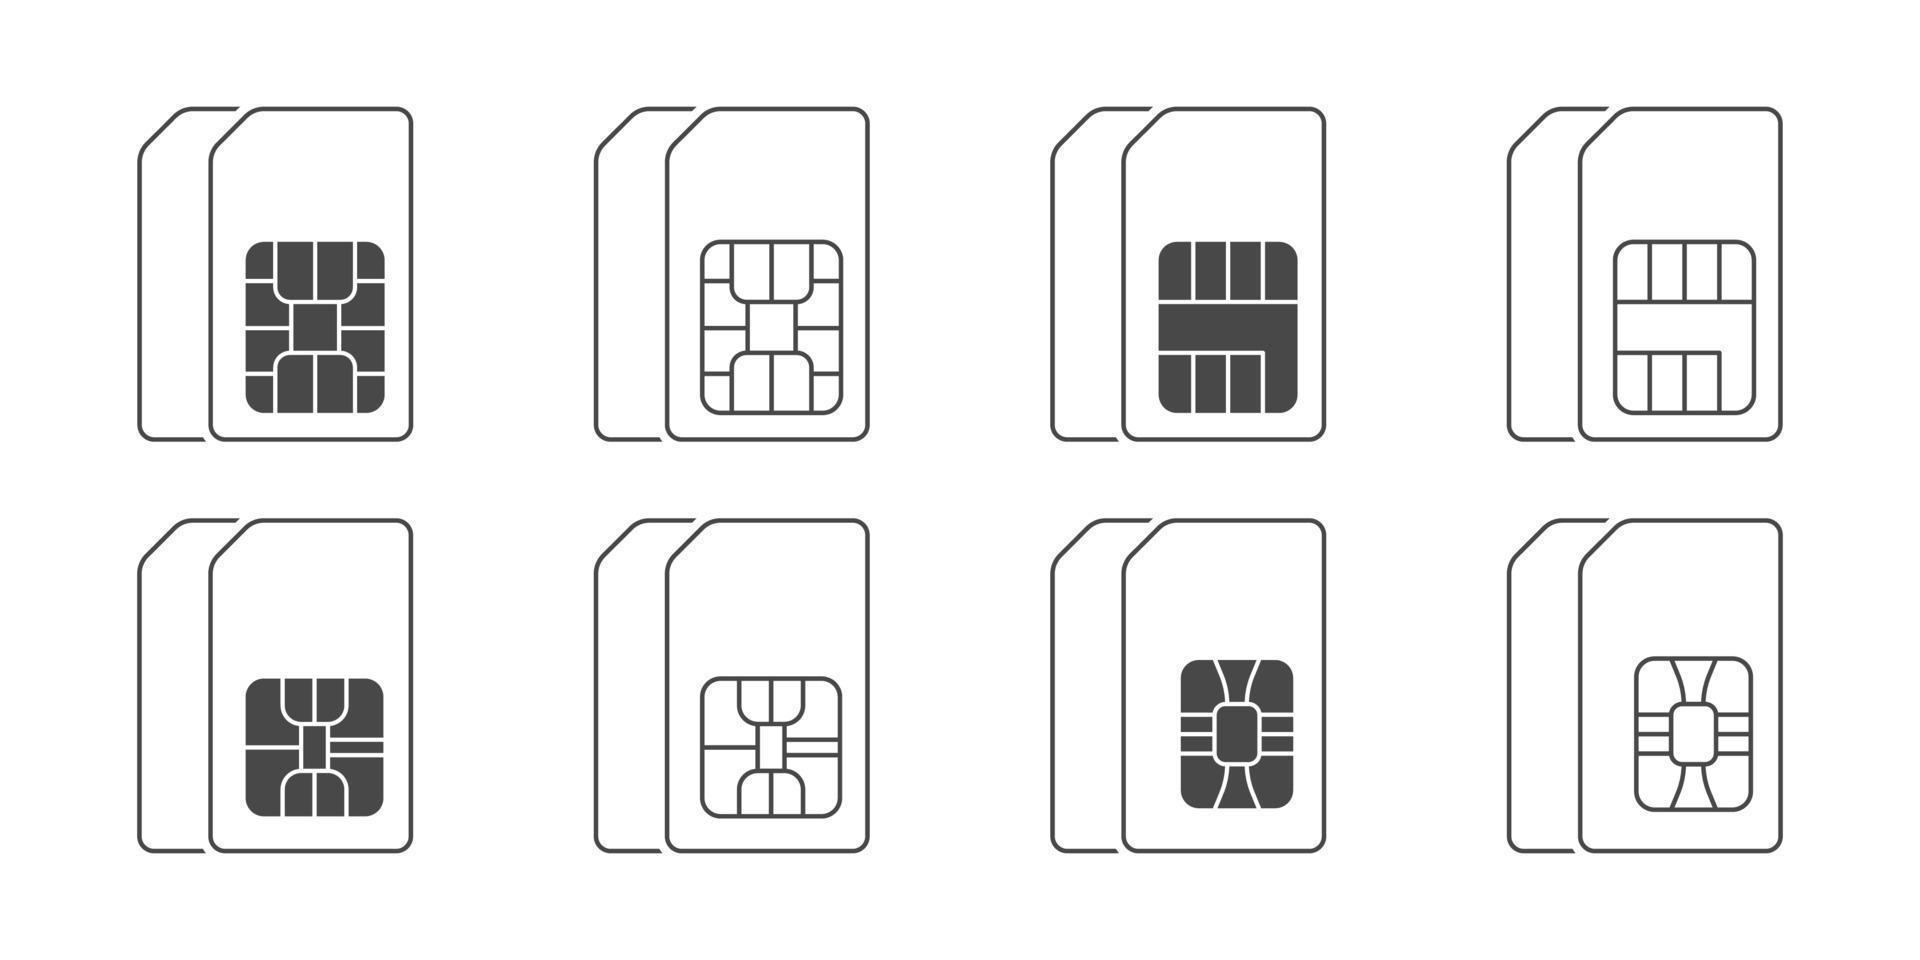 iconos de tarjeta sim dual. conjunto de iconos de tarjeta SIM. iconos lineales de tarjetas sim de teléfonos móviles. ilustración vectorial vector